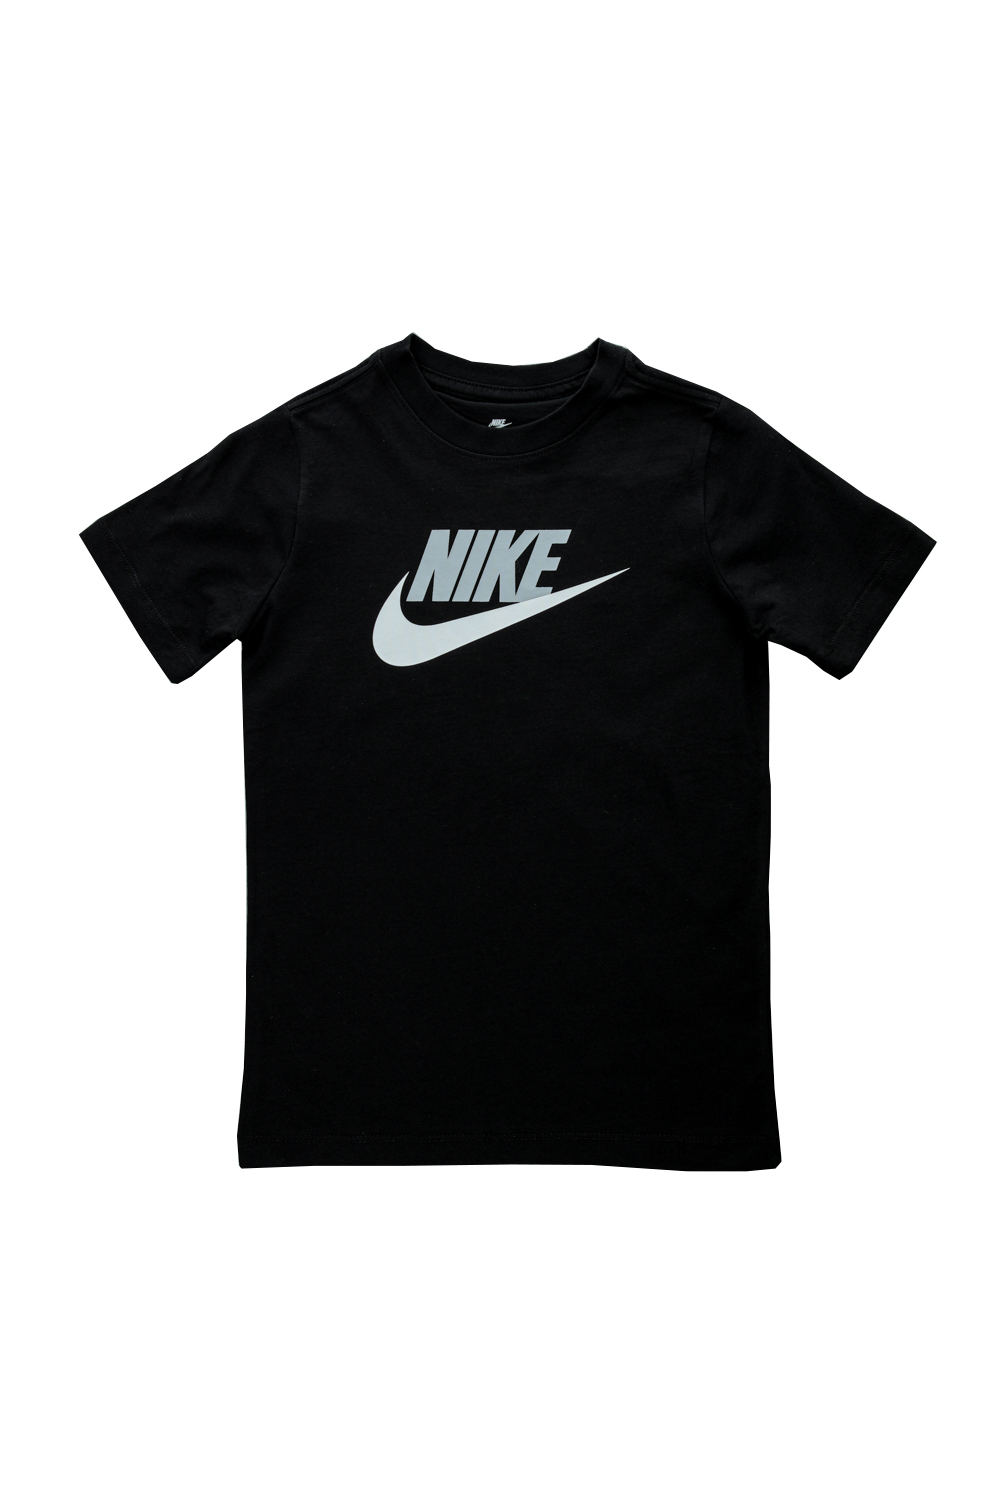 Παιδικά/Boys/Ρούχα/Μπλούζες NIKE - Παιδικό t-shirt ΝΙΚΕ NSW FUTURA ICON μαύρο